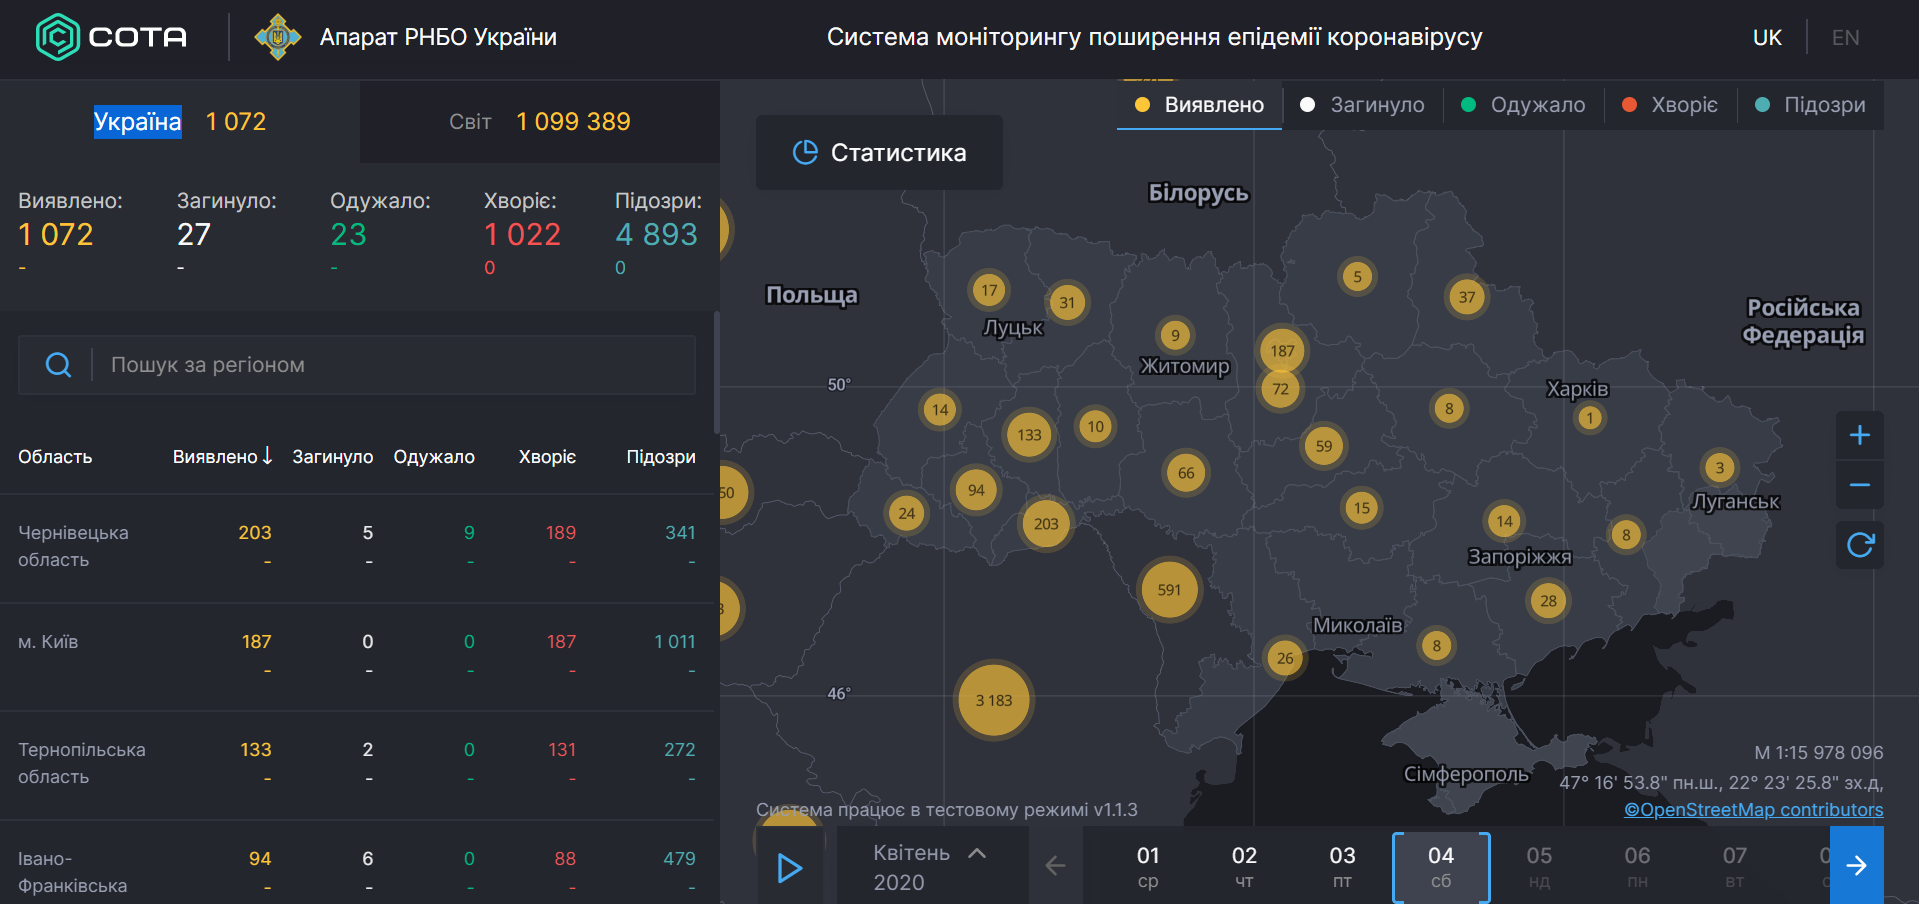 Коронавирус продолжил атаку на мир и Украину: статистика на 4 апреля. Постоянно обновляется